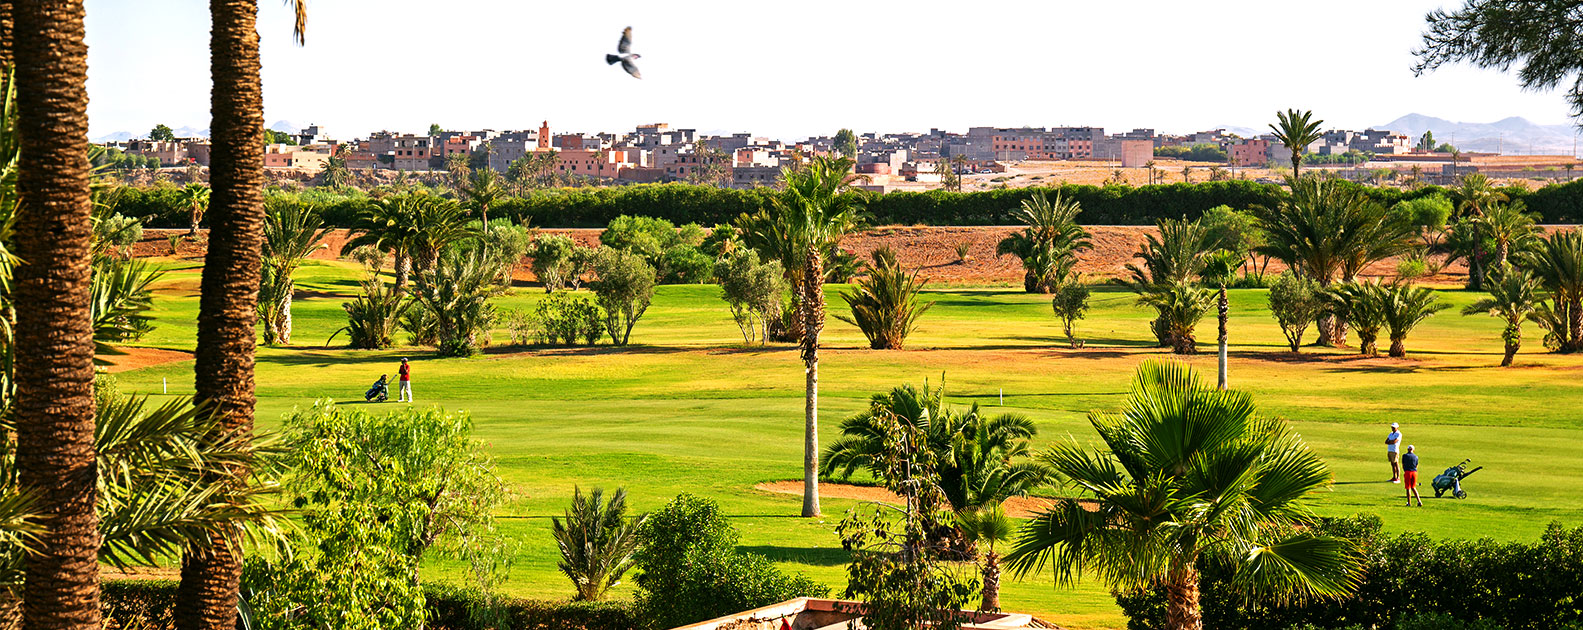 Die Freuden des Golfsports in Marokko